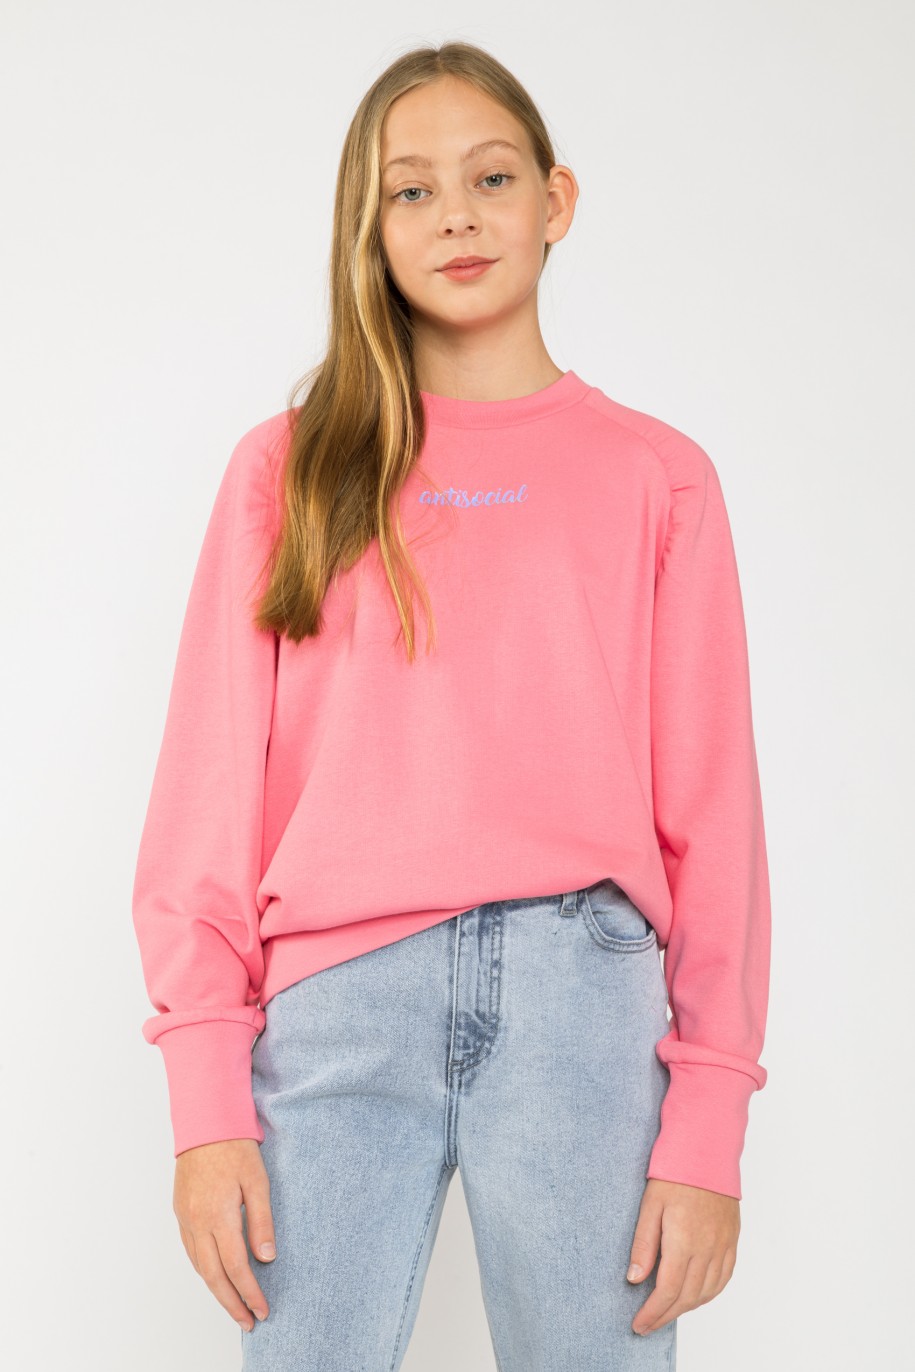 Różowa bluza dla dziewczyny - 33073